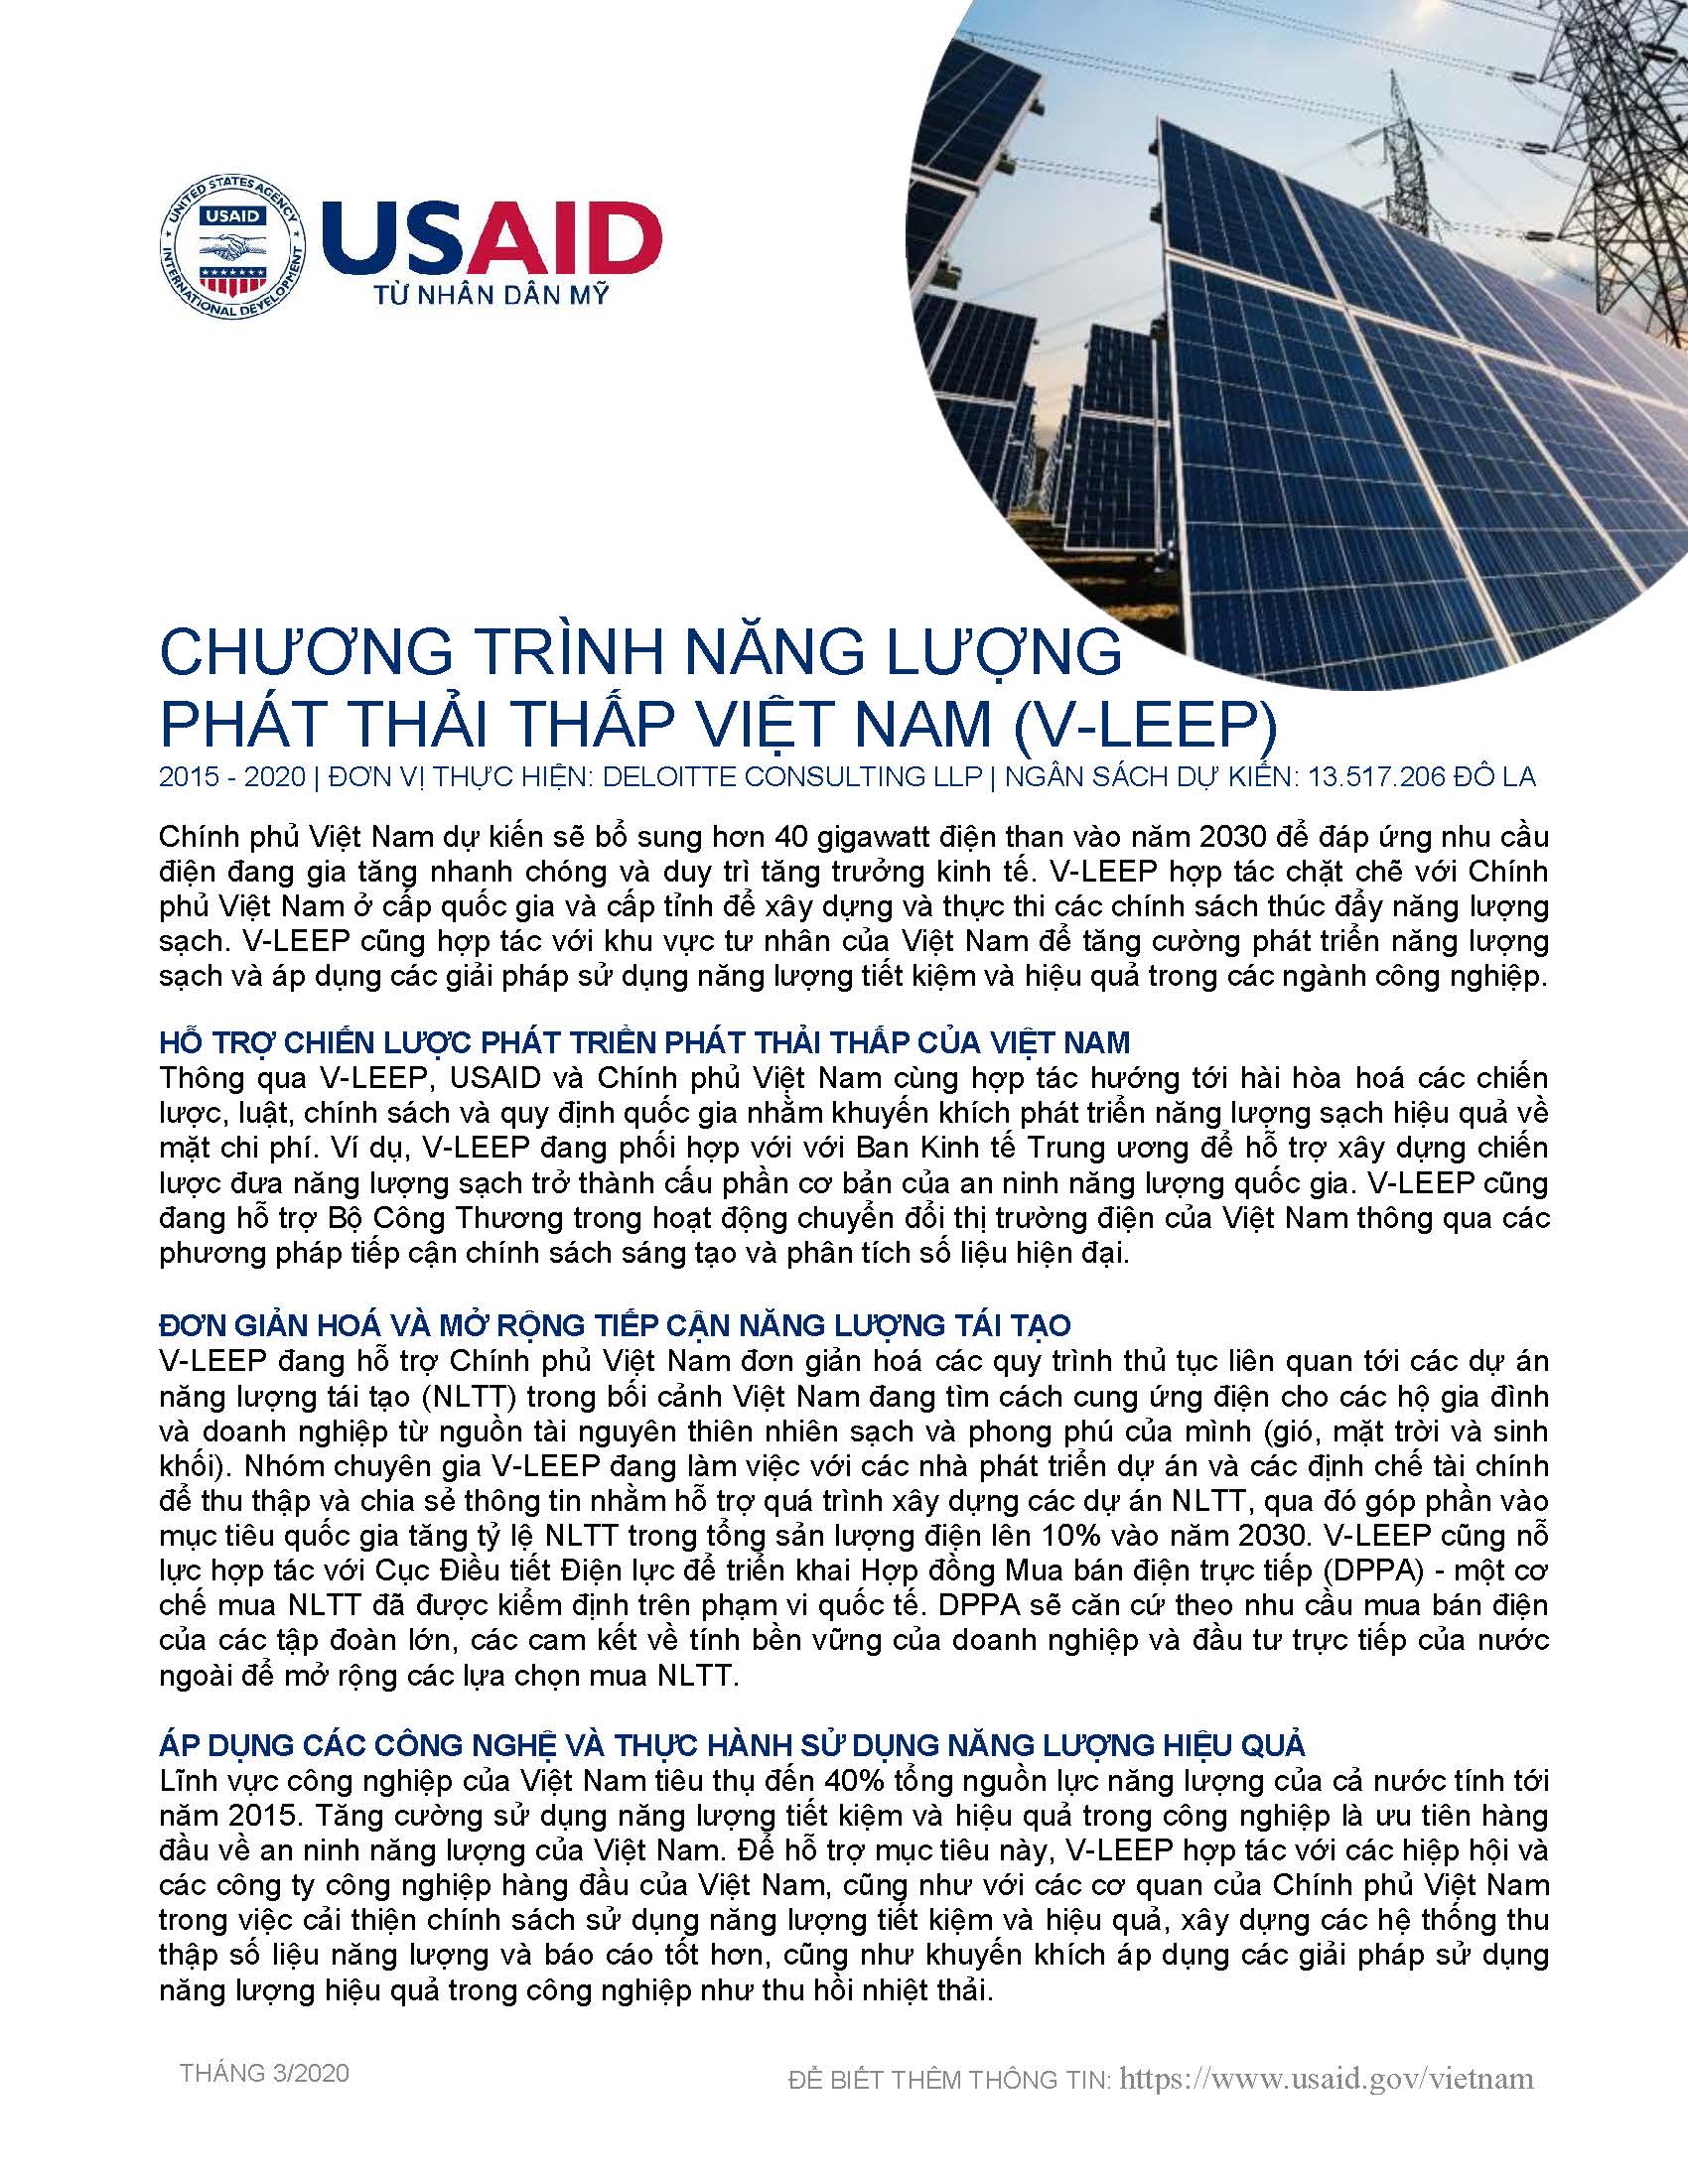 Chương trình Năng lượng Phát thải thấp Việt Nam (V-LEEP)